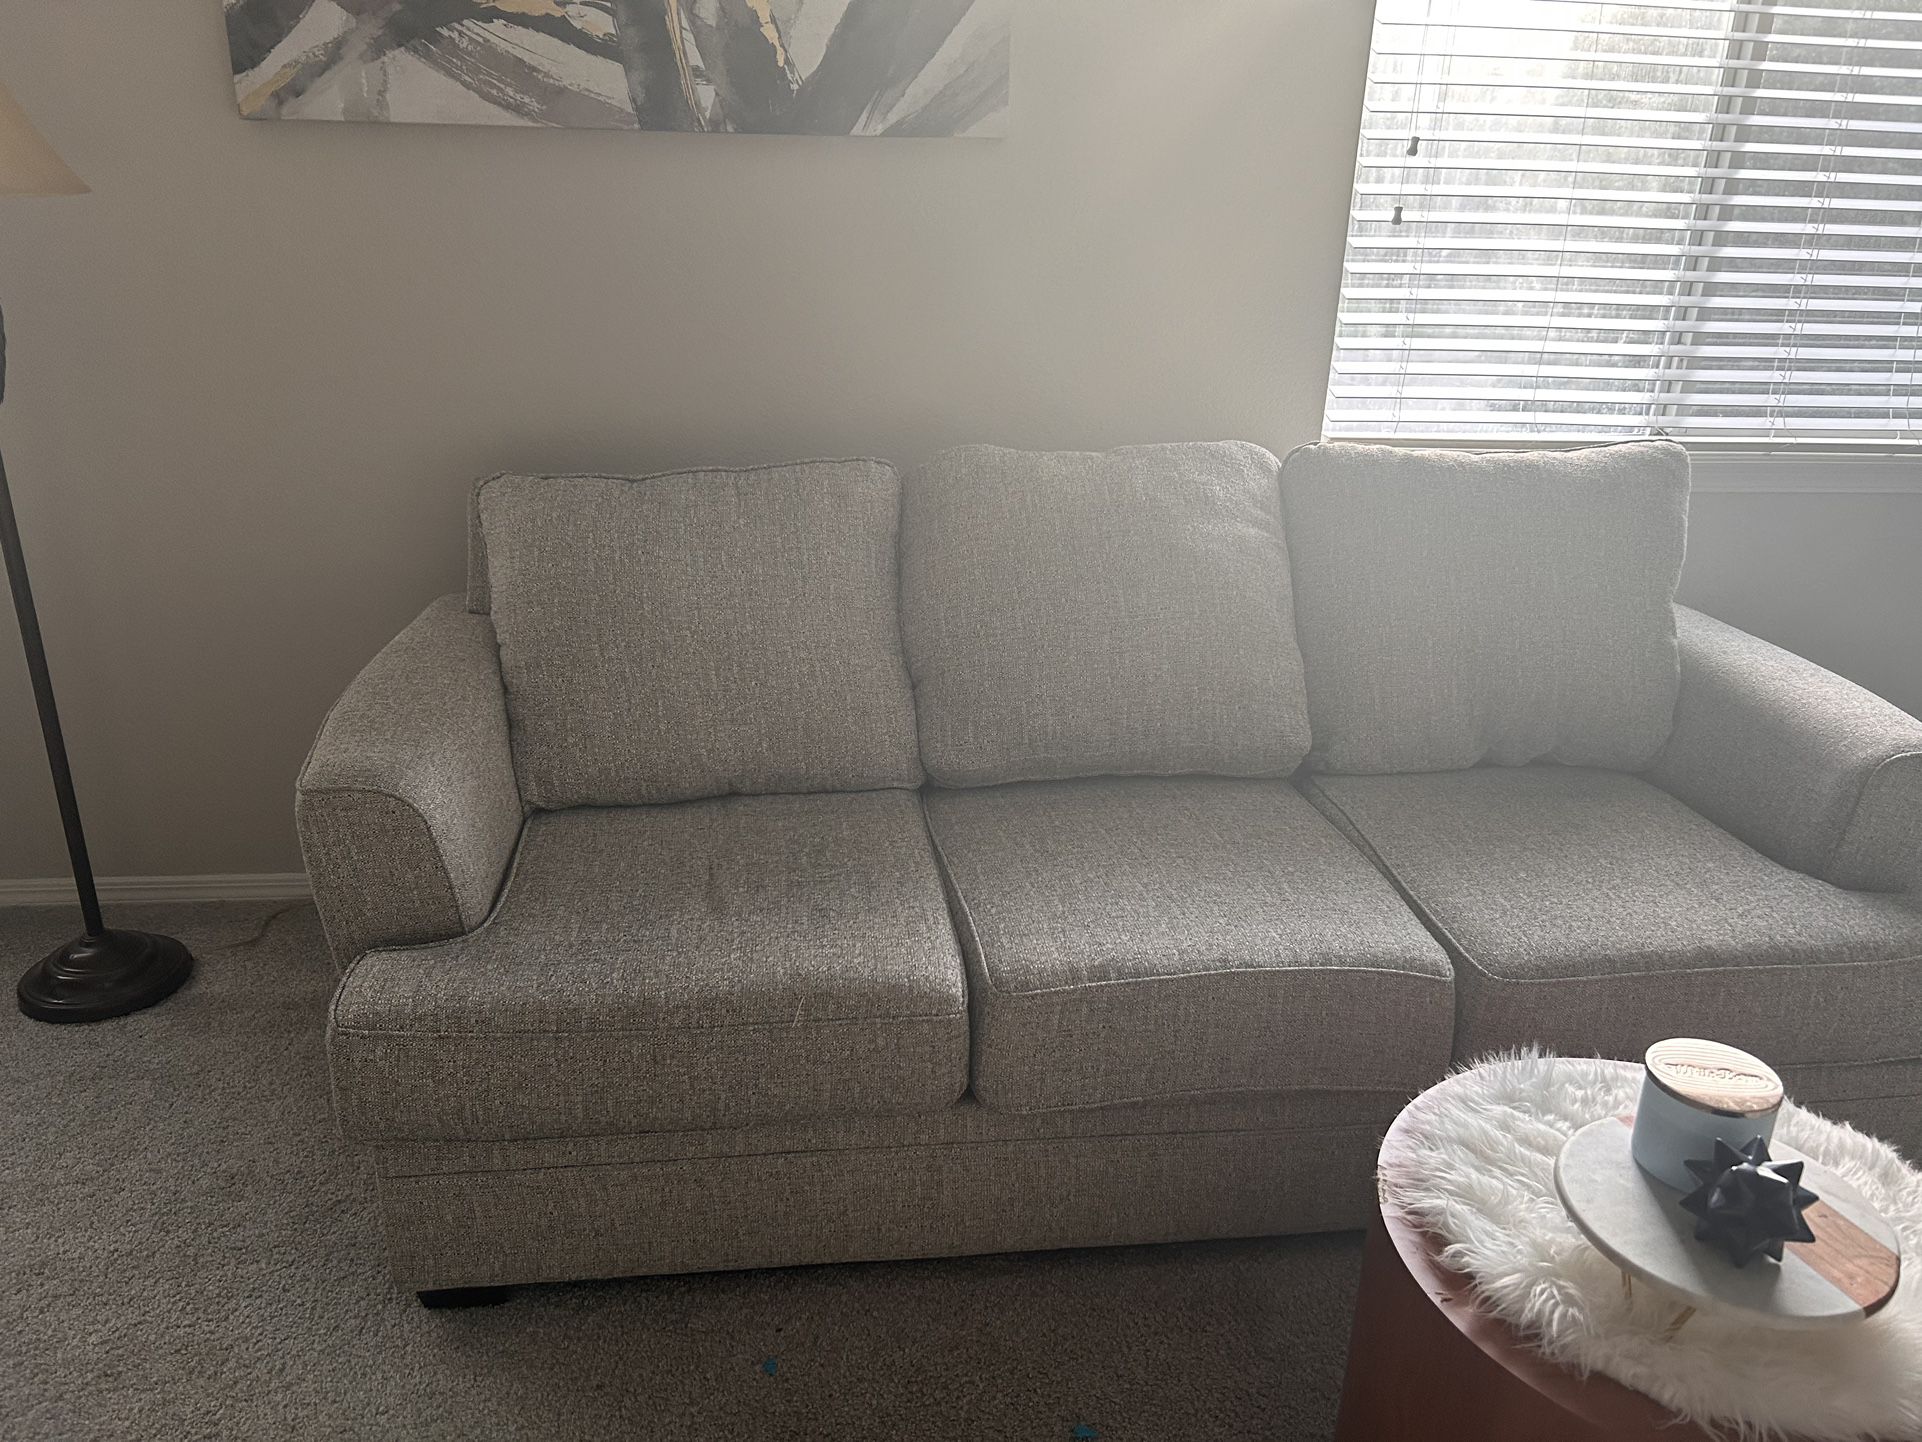 Grey Medium-Sized Sofa